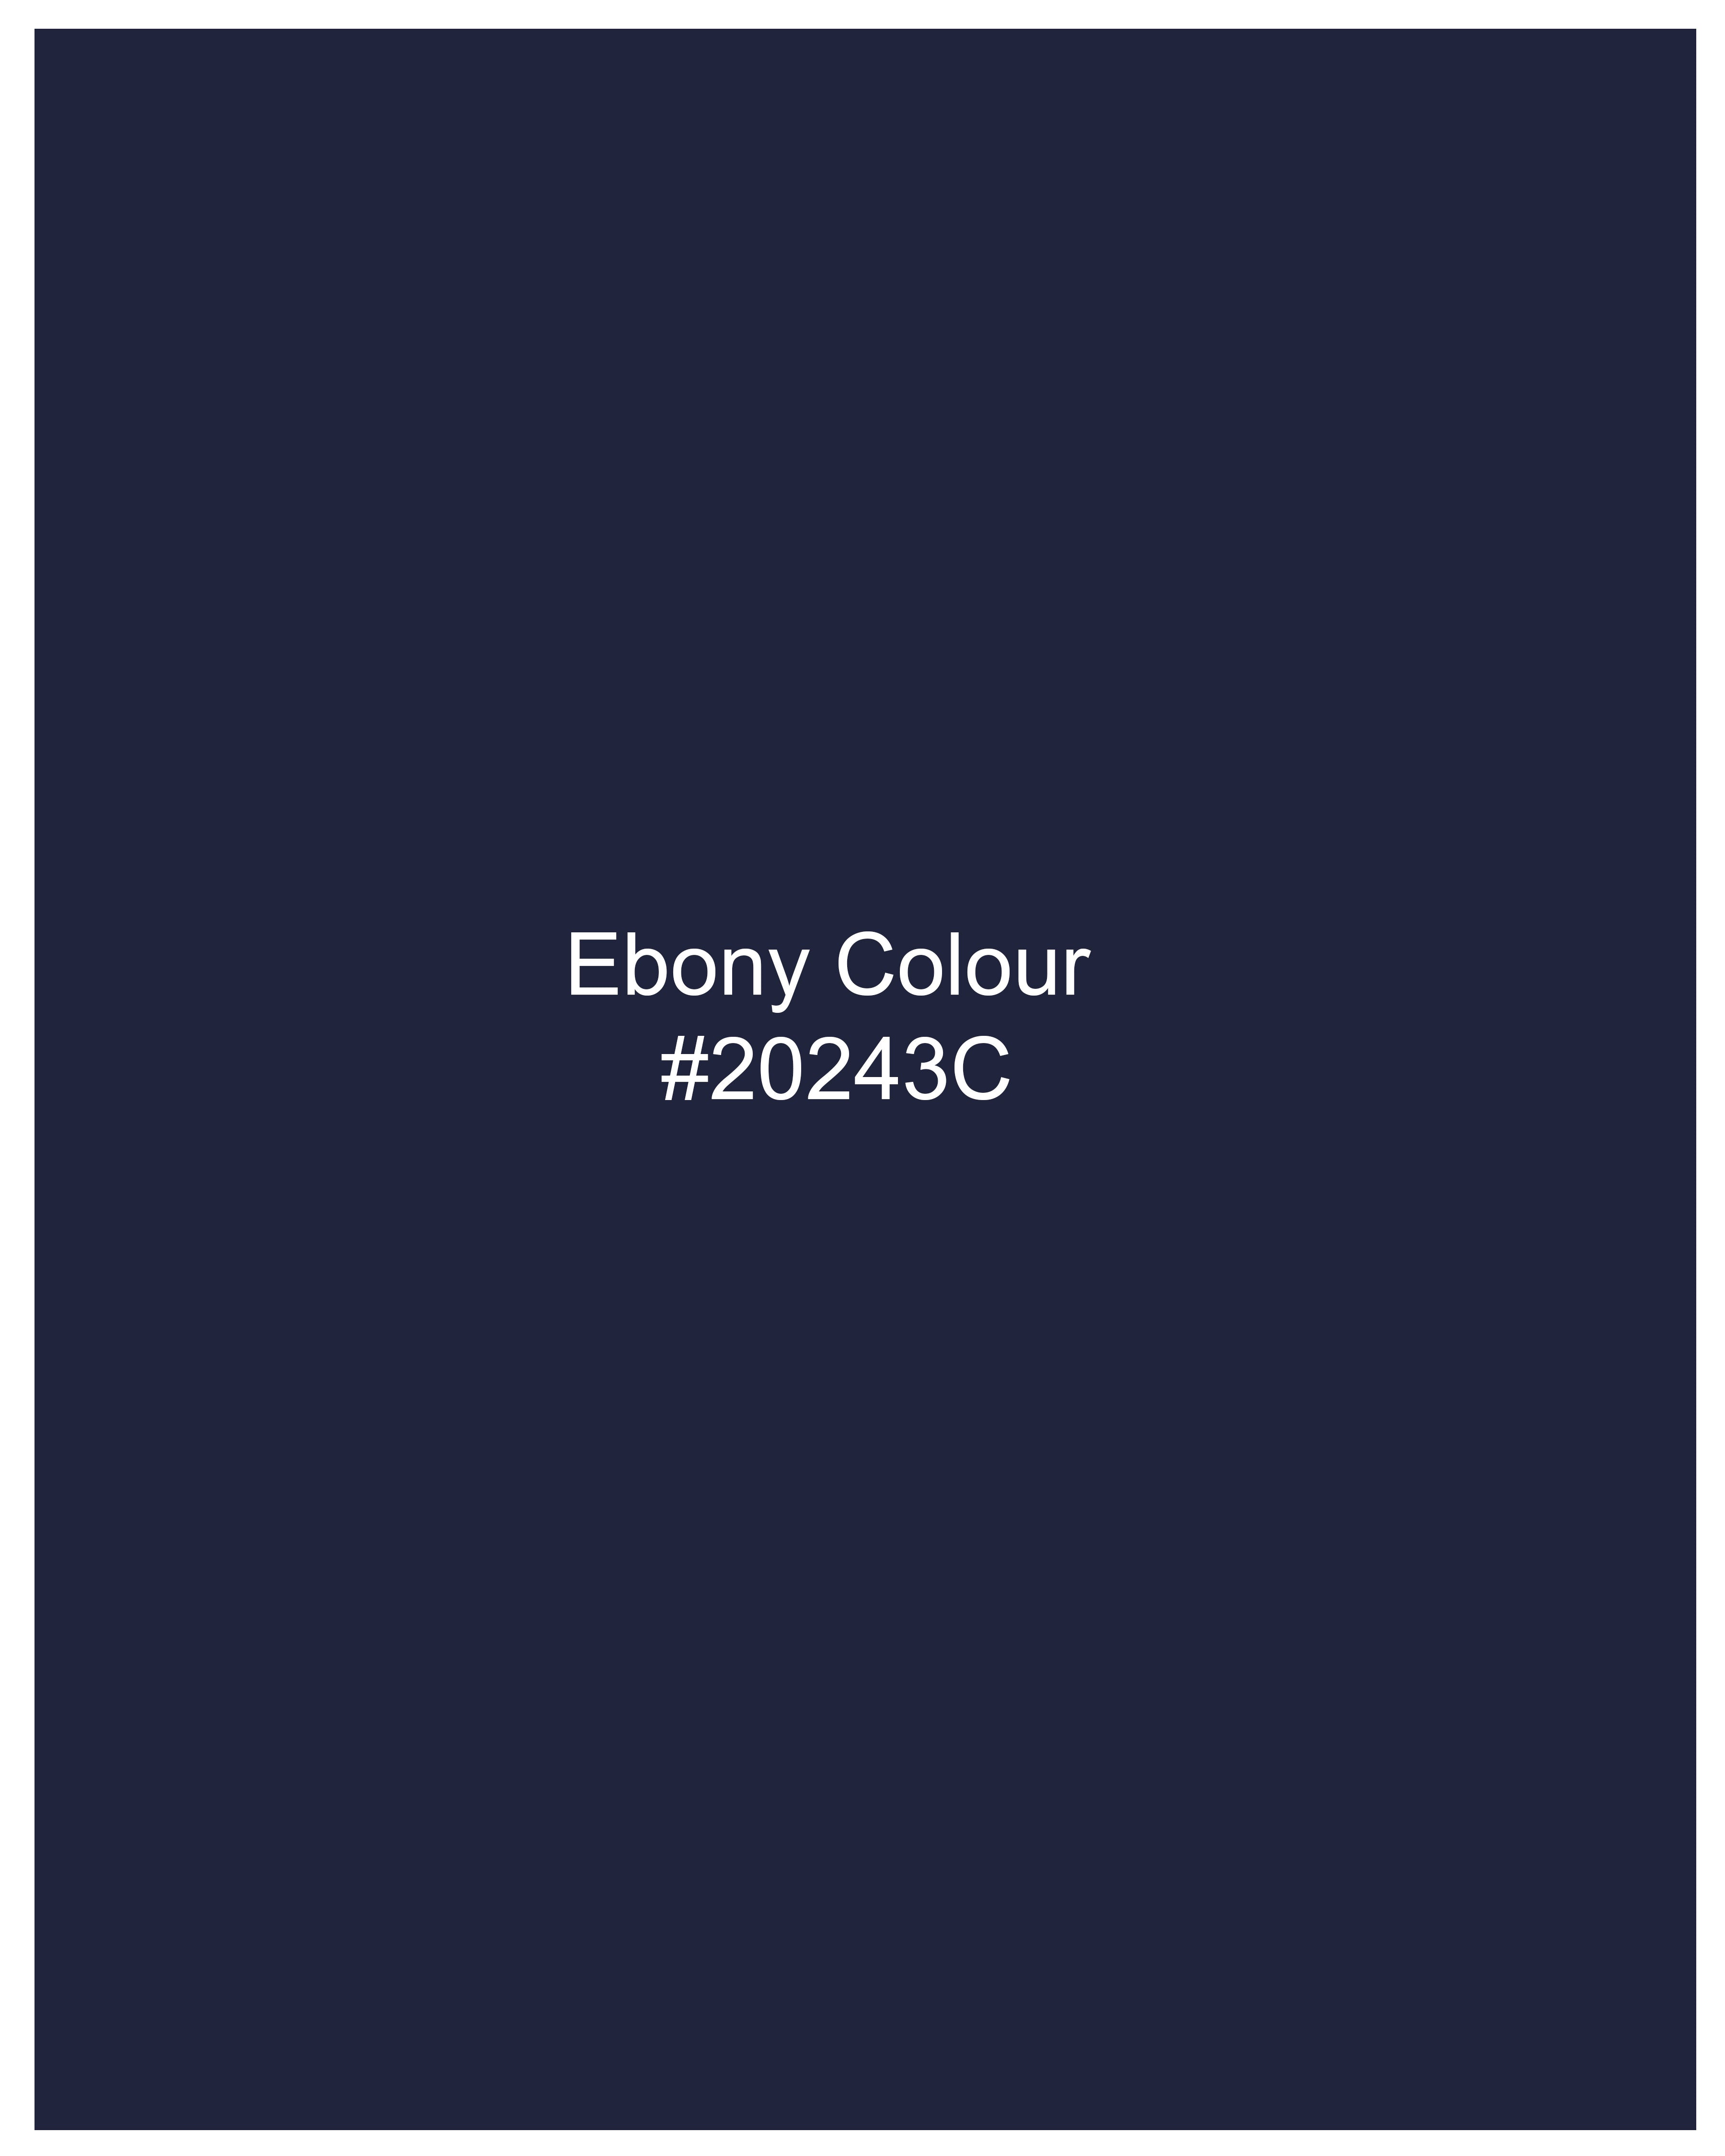 Ebony Navy Blue Dobby Textured Premium Giza Cotton Shirt 9331-BLE-38, 9331-BLE-H-38, 9331-BLE-39, 9331-BLE-H-39, 9331-BLE-40, 9331-BLE-H-40, 9331-BLE-42, 9331-BLE-H-42, 9331-BLE-44, 9331-BLE-H-44, 9331-BLE-46, 9331-BLE-H-46, 9331-BLE-48, 9331-BLE-H-48, 9331-BLE-50, 9331-BLE-H-50, 9331-BLE-52, 9331-BLE-H-52